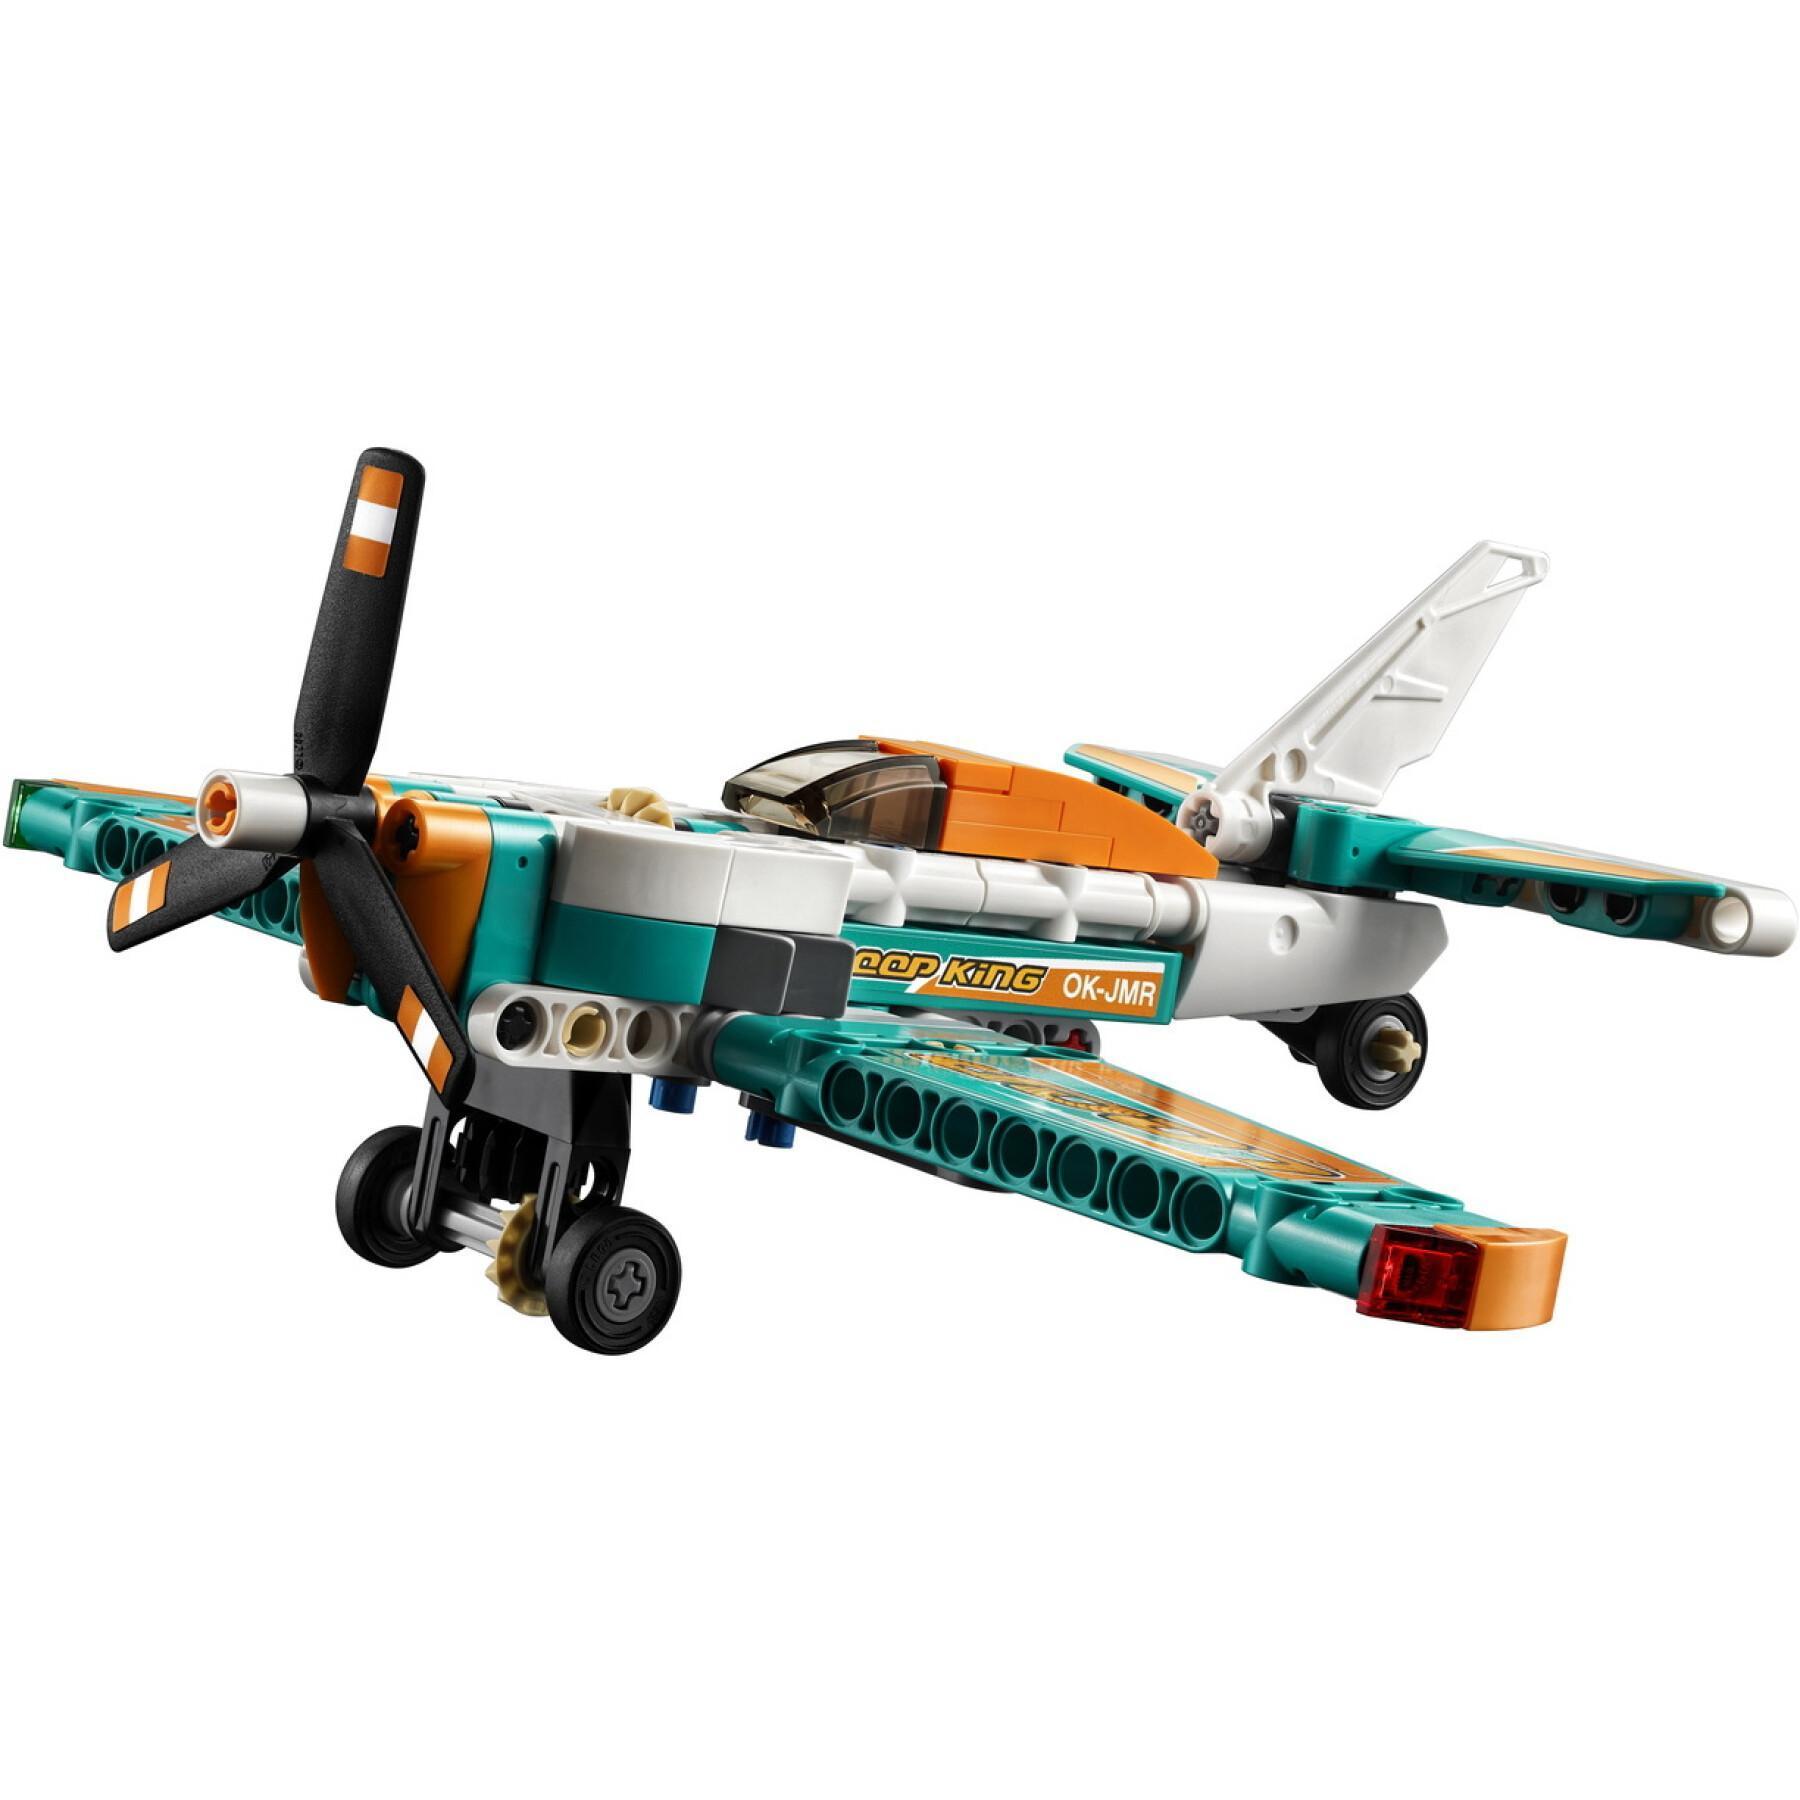 Samolot wyścigowy Lego Technic